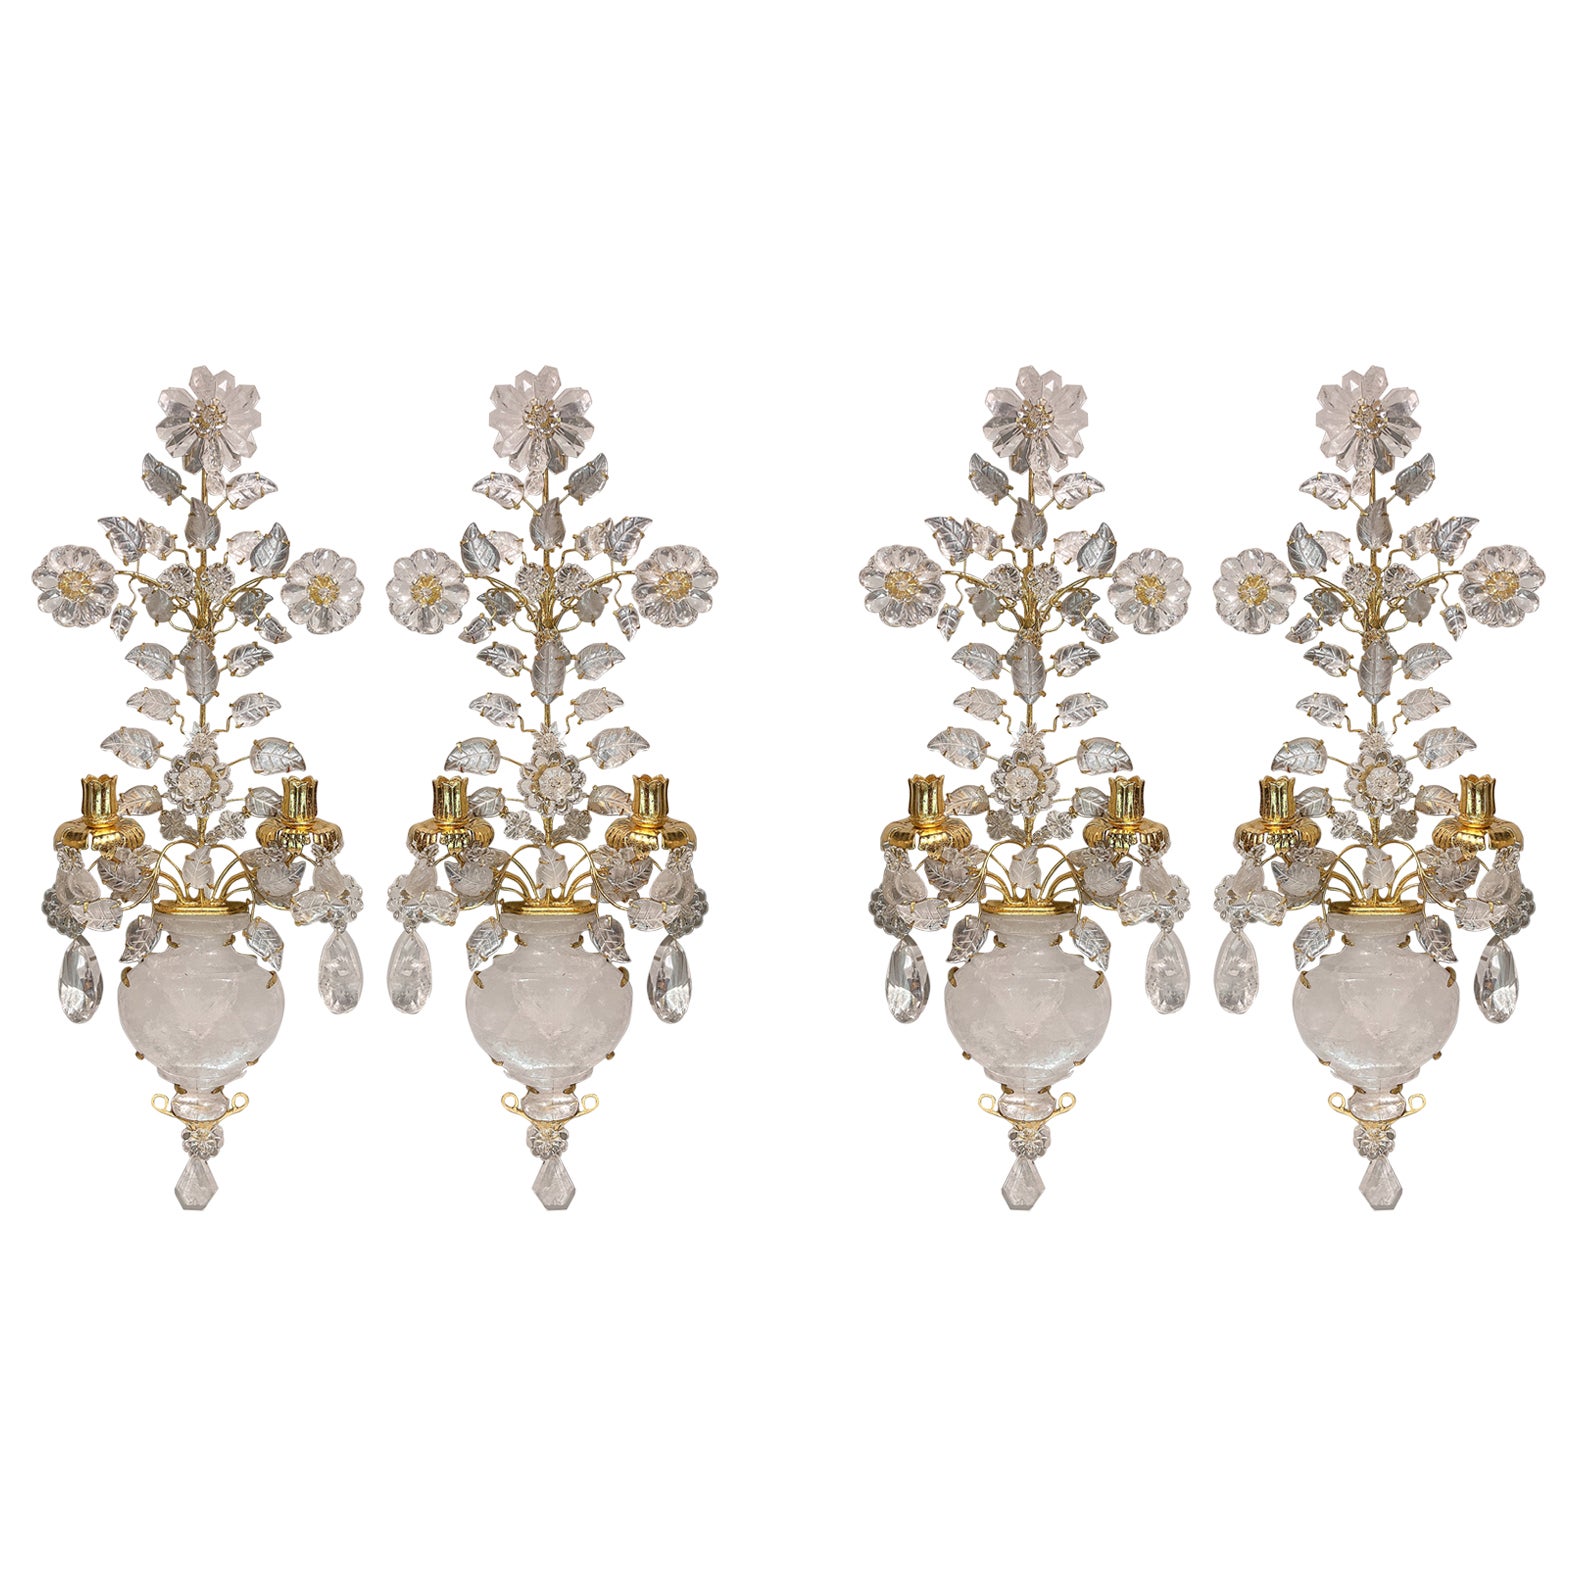 Set aus vier Bergkristall-Wandleuchtern mit zwei Lichtern, Bouquet